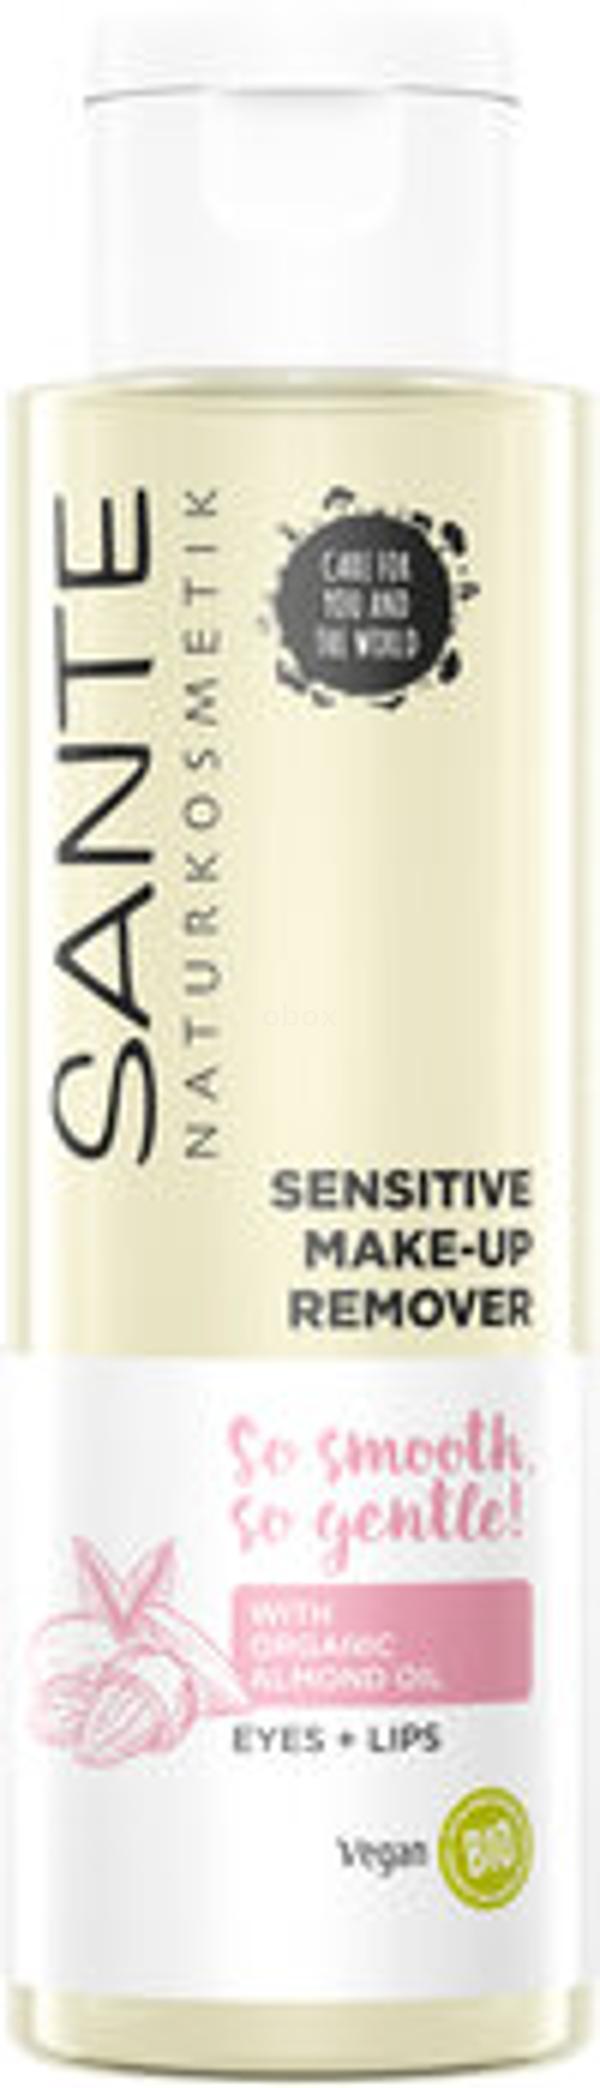 Produktfoto zu Sensitive Make-up Remover 100ml